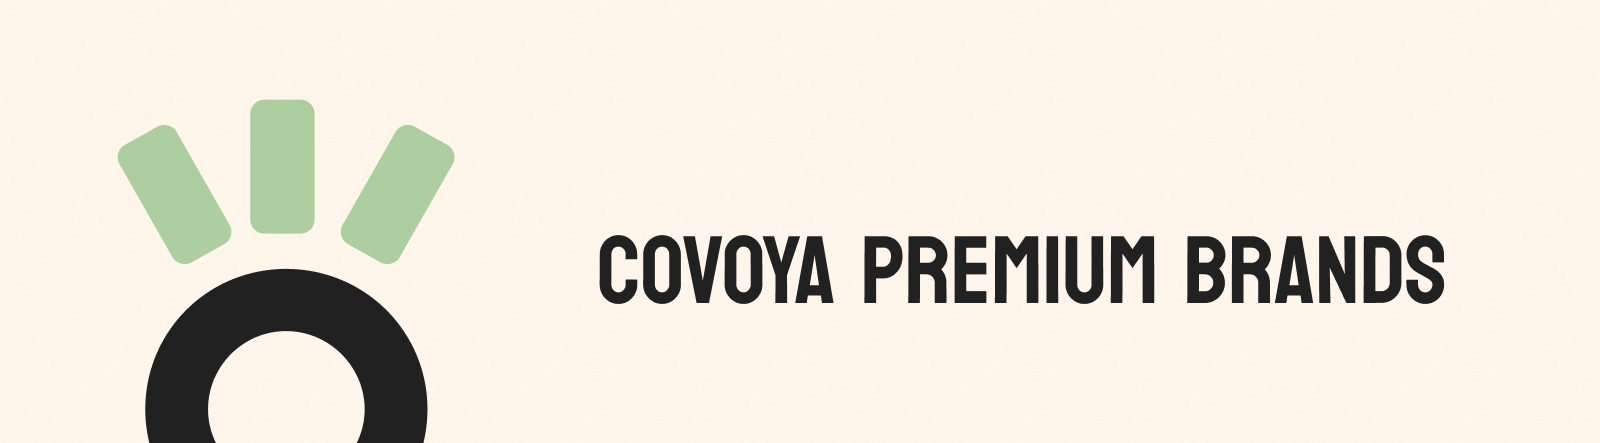 Covoya Brands